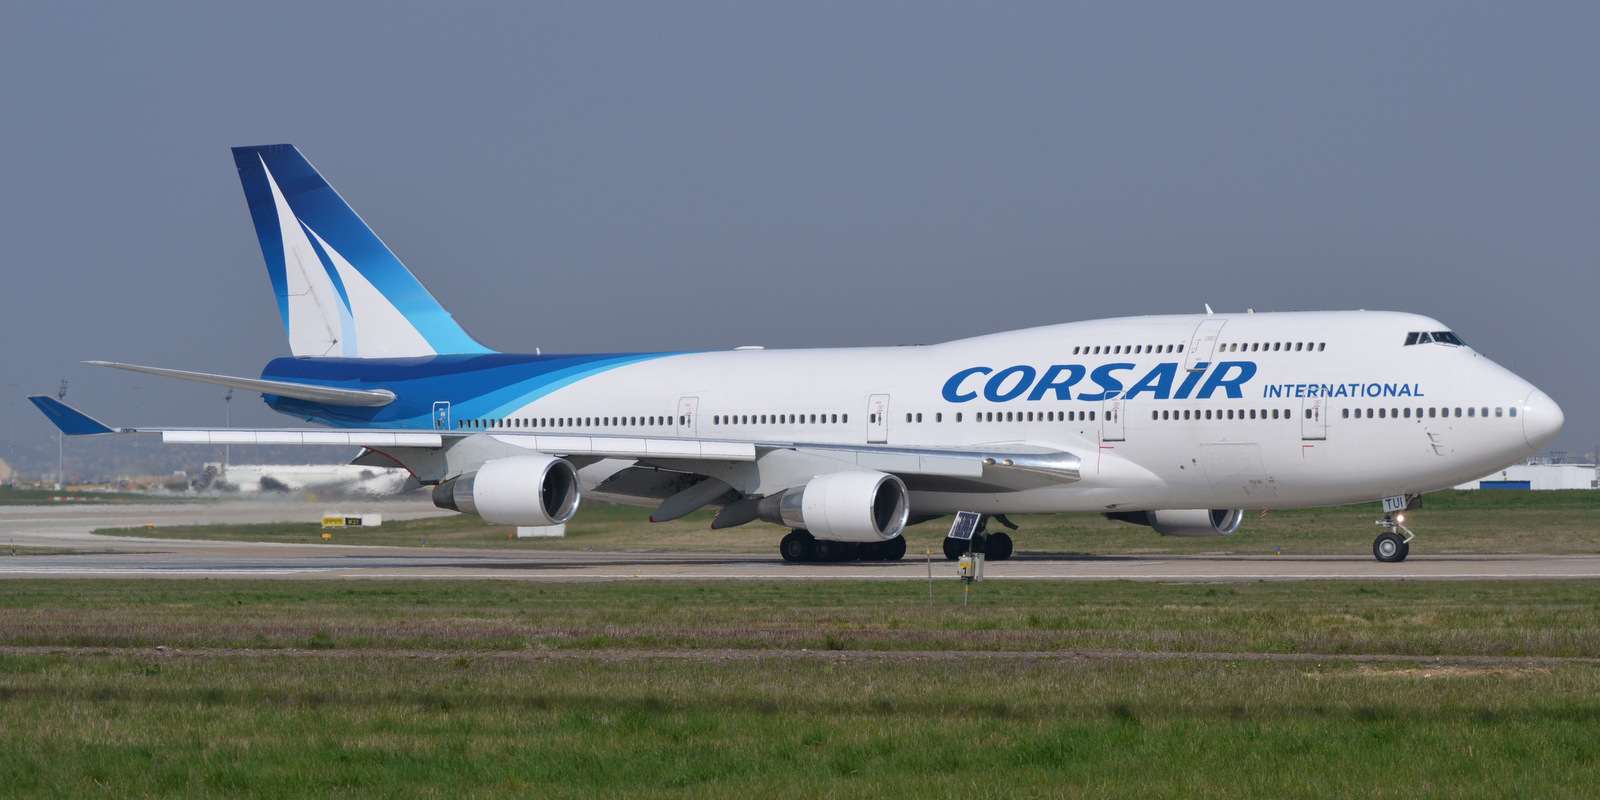     Corsair dit adieu aux 747 

